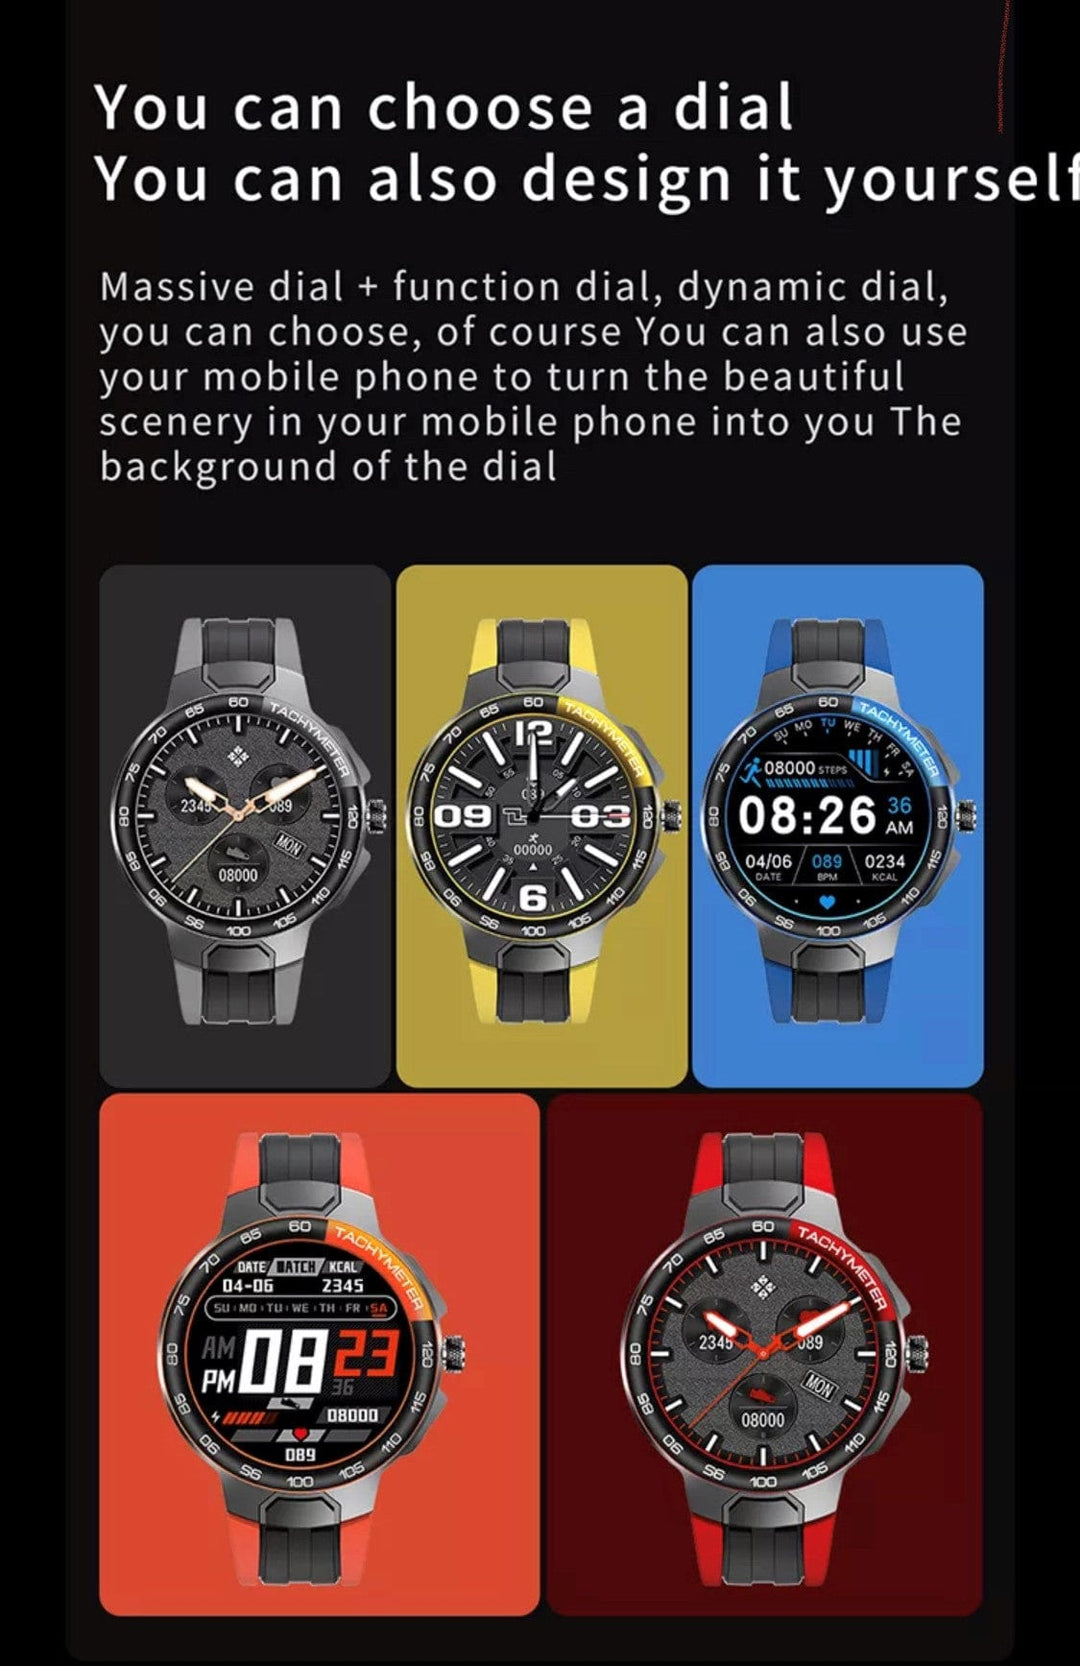 SMARTOBY E15 Blue Sports Smart Watch